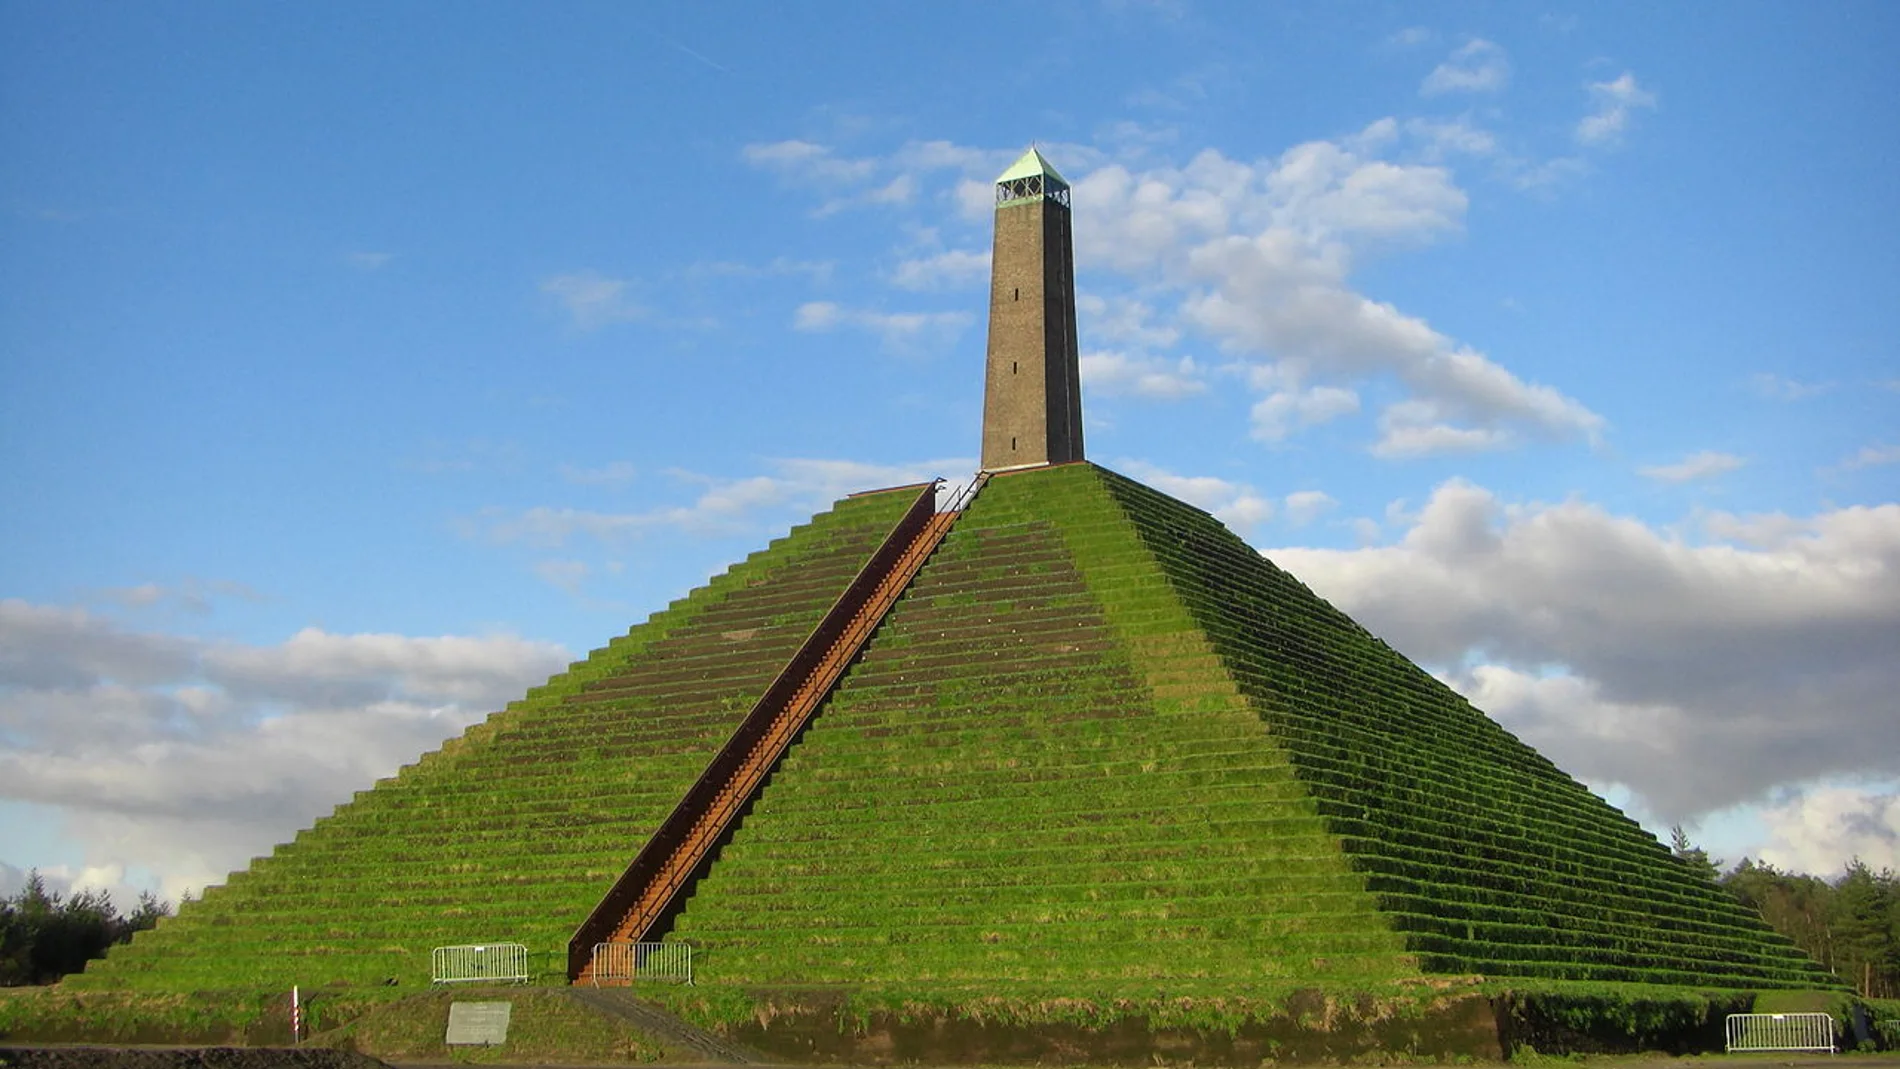 La pirámide de Austerlitz. Fuente: Wikipedia.